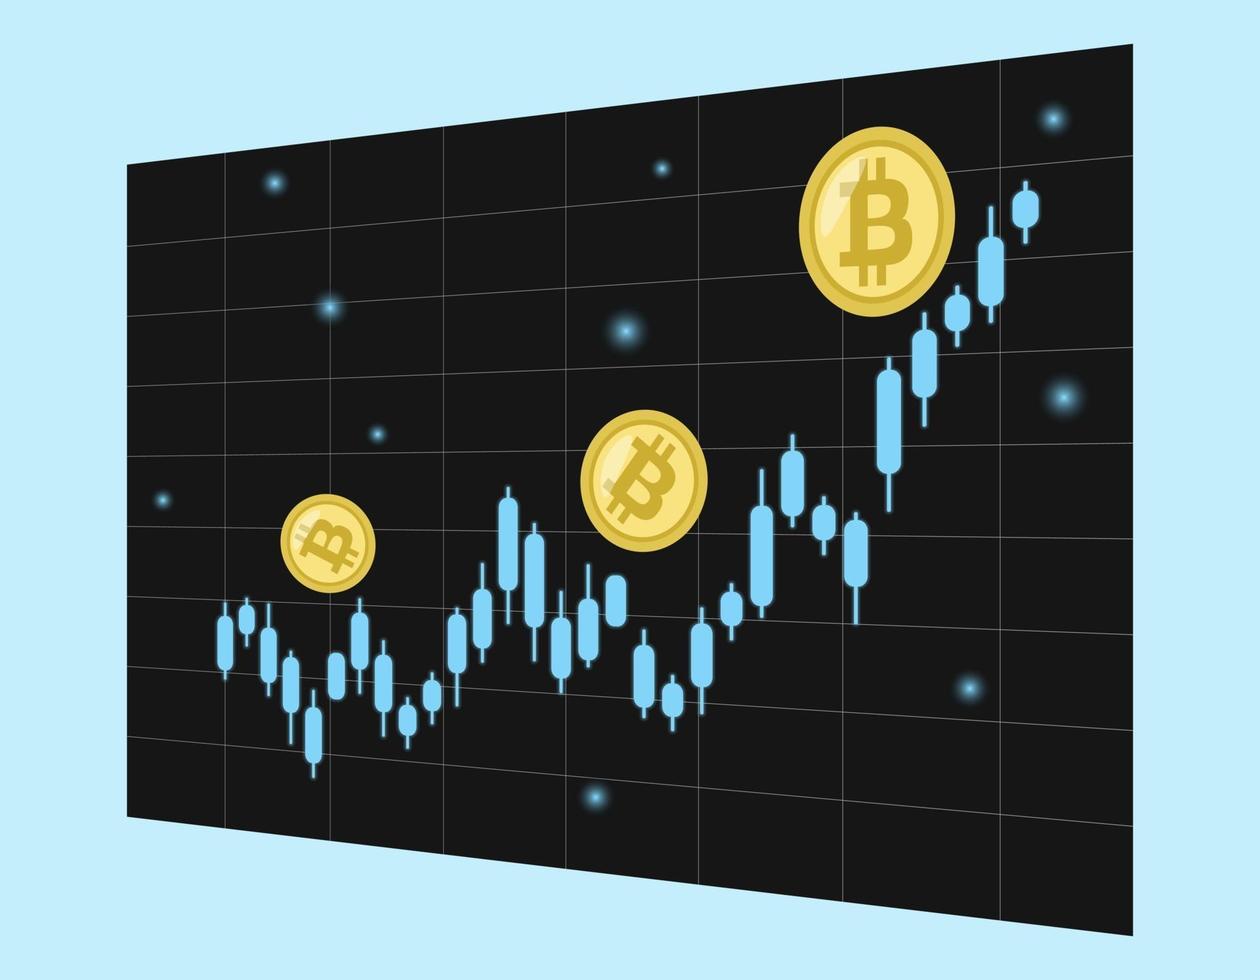 Bitcoin steigt. Kryptowährungs-Chart geht nach oben vektor